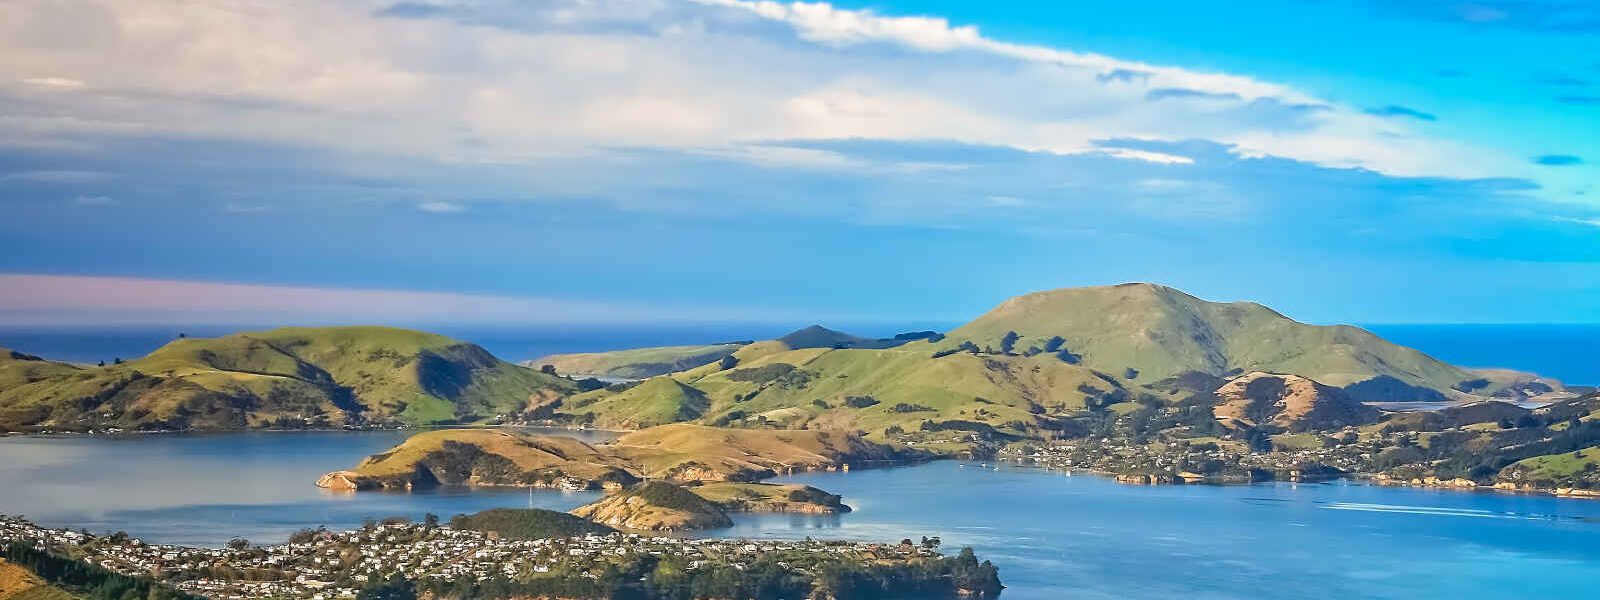 Vue aérienne, Dunedin, Nouvelle-Zélande